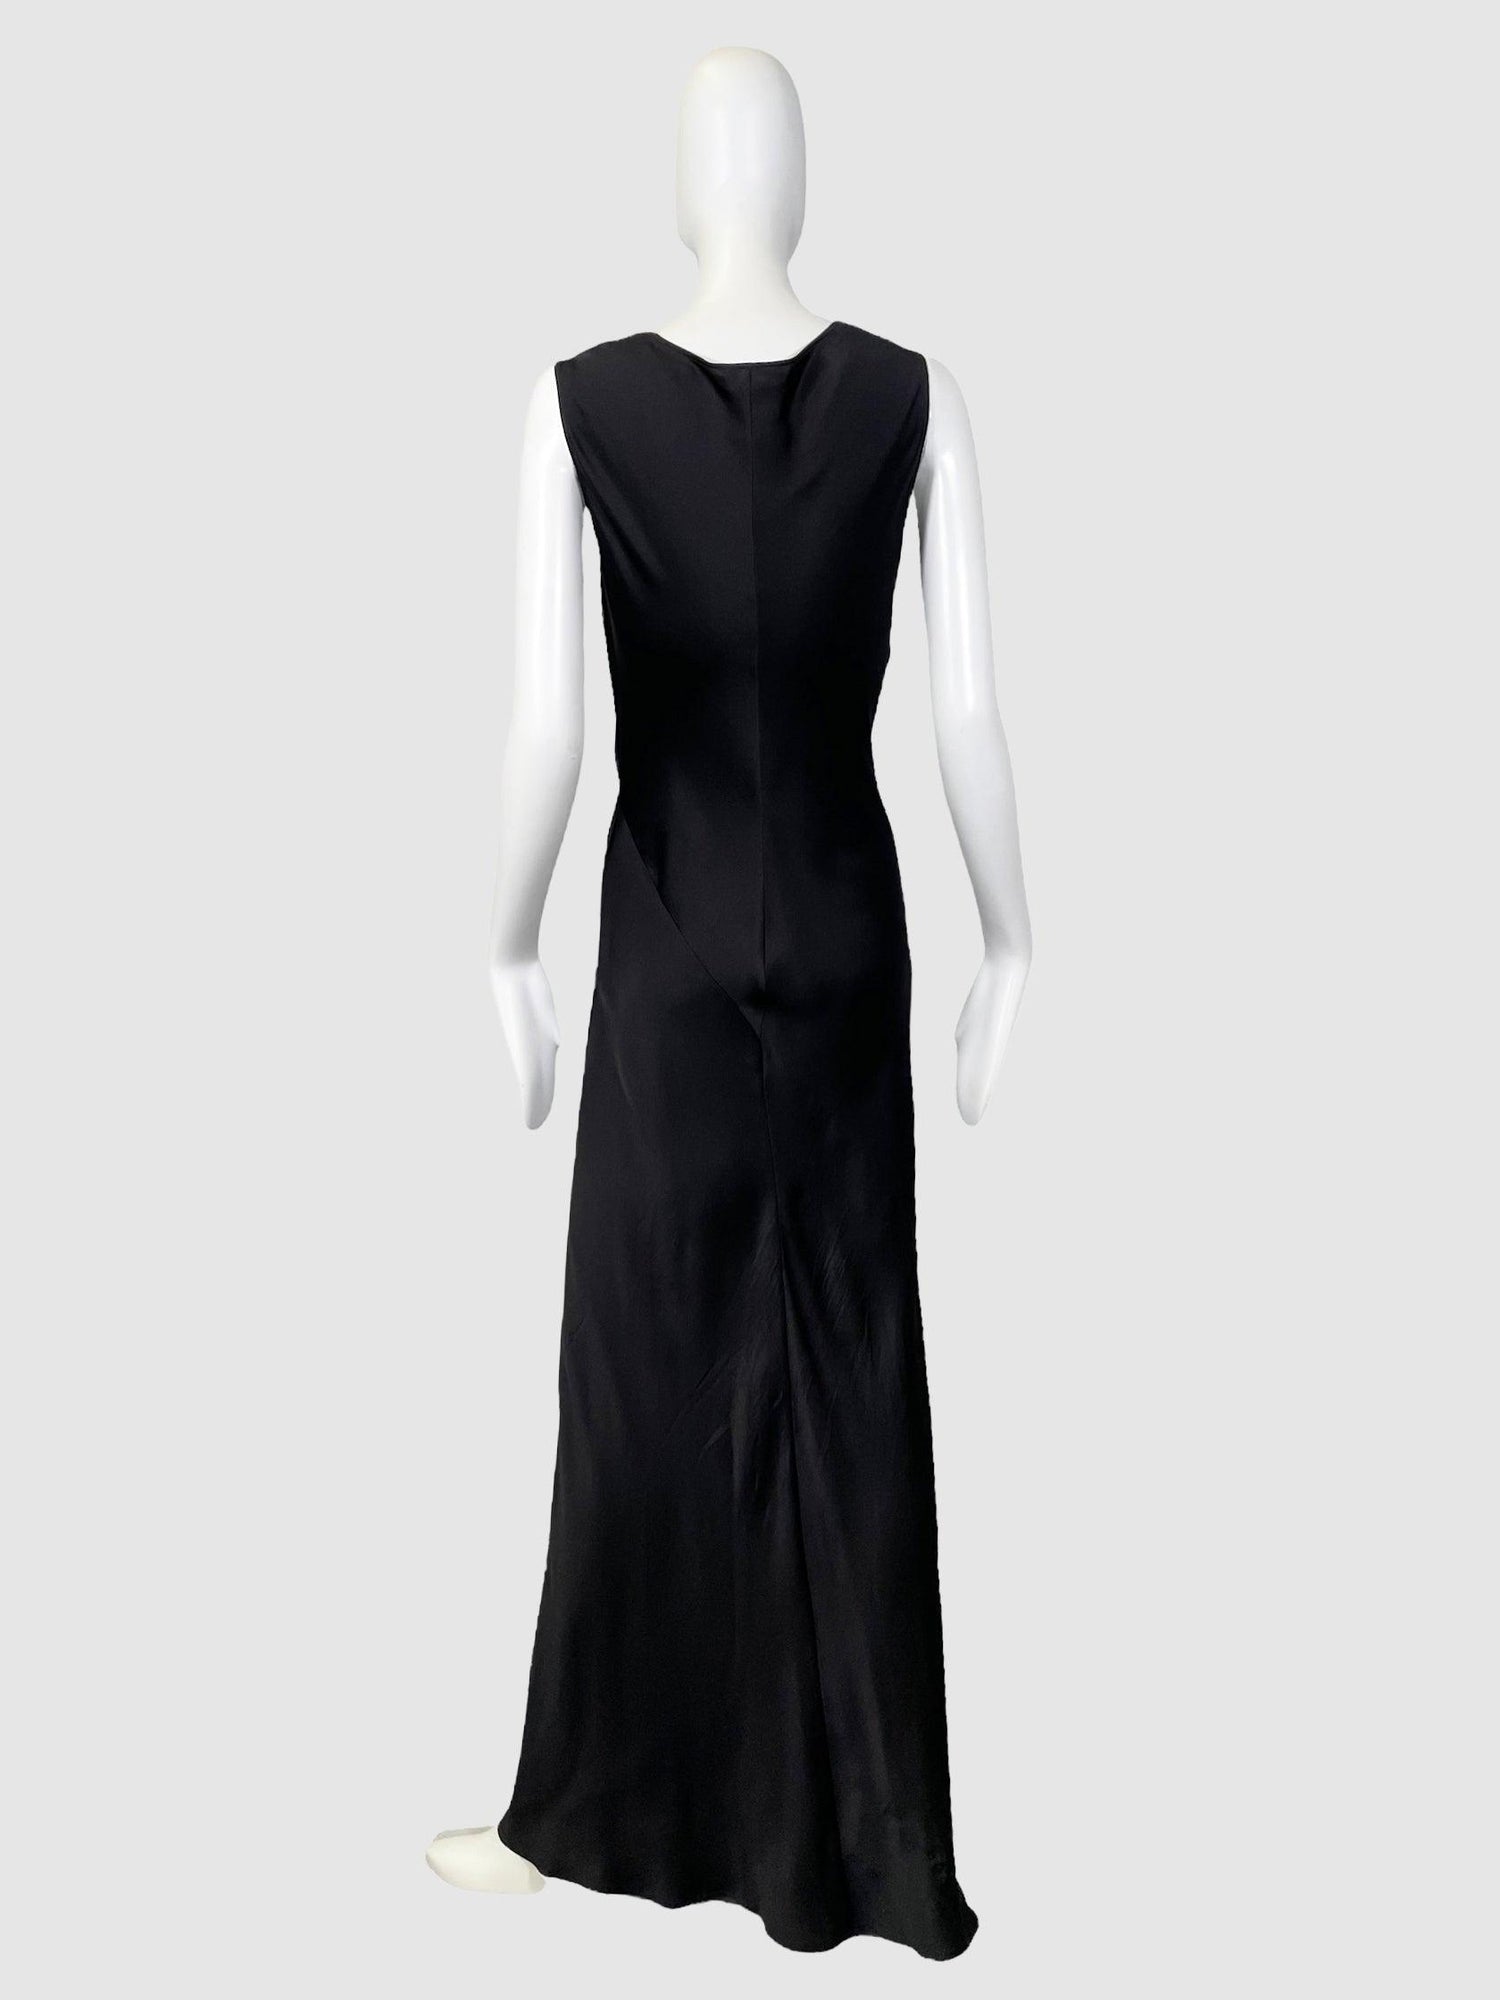 Celine Black Silk Maxi Dress - Size 40 - Second Nature Boutique